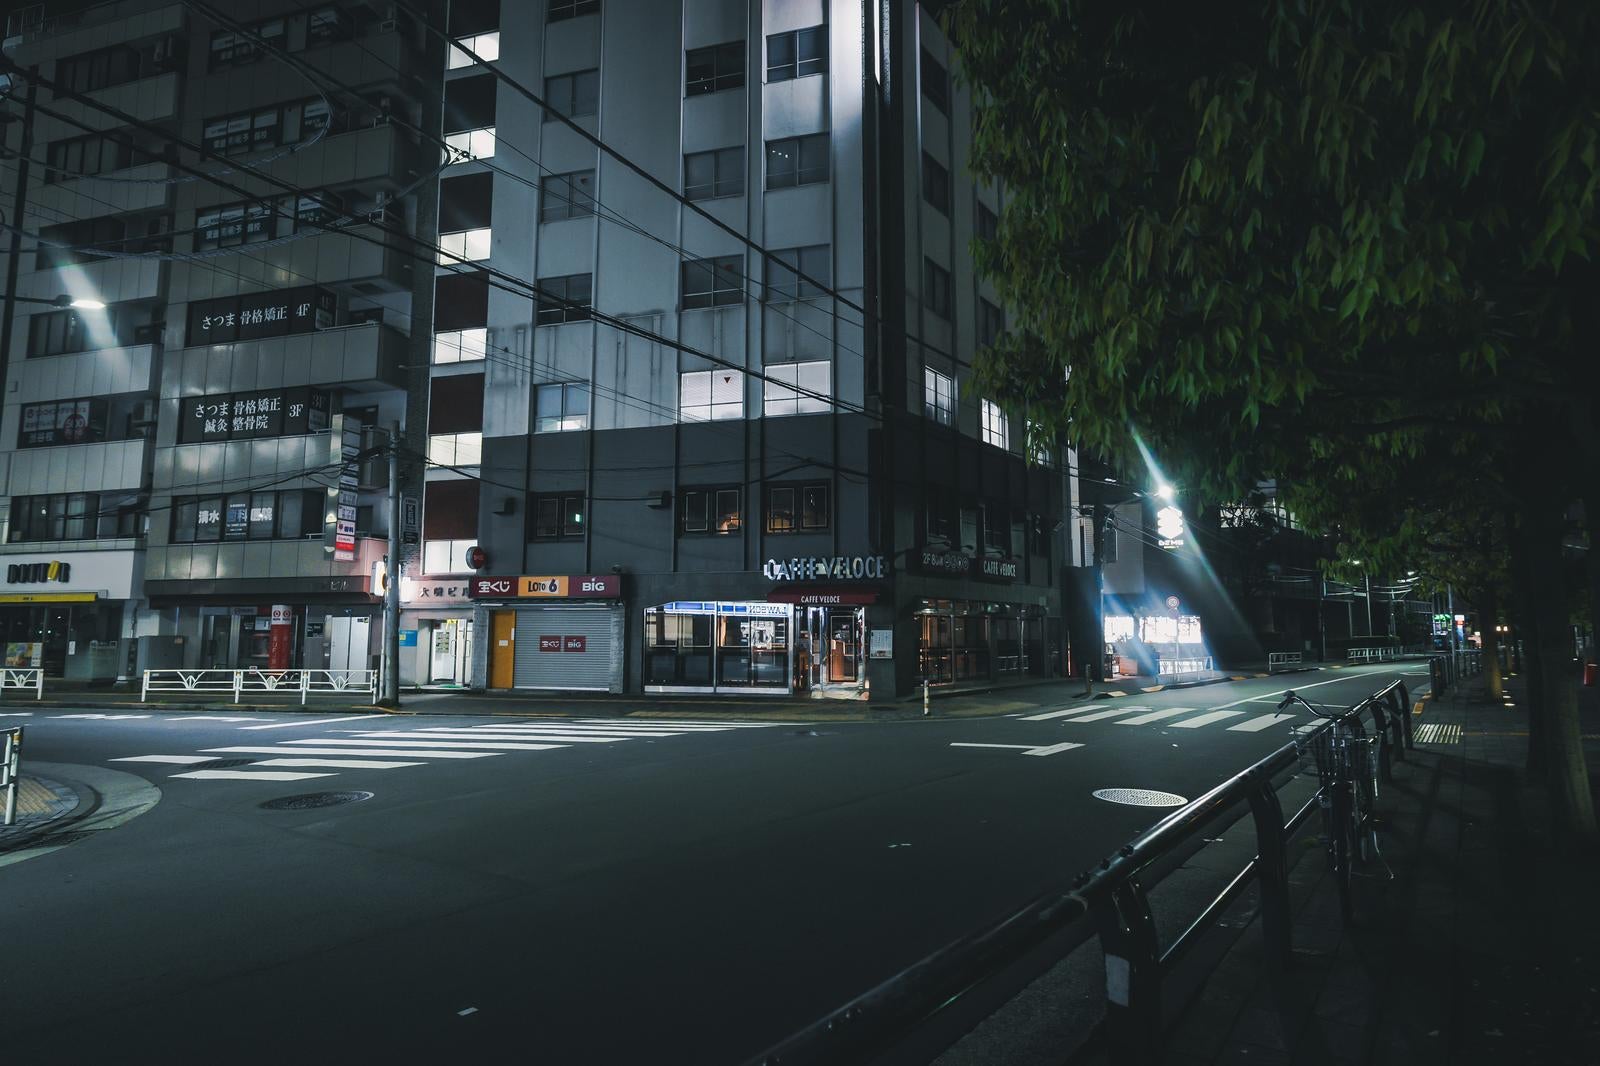 「夜間のJR渋谷駅新南口付近の様子」の写真